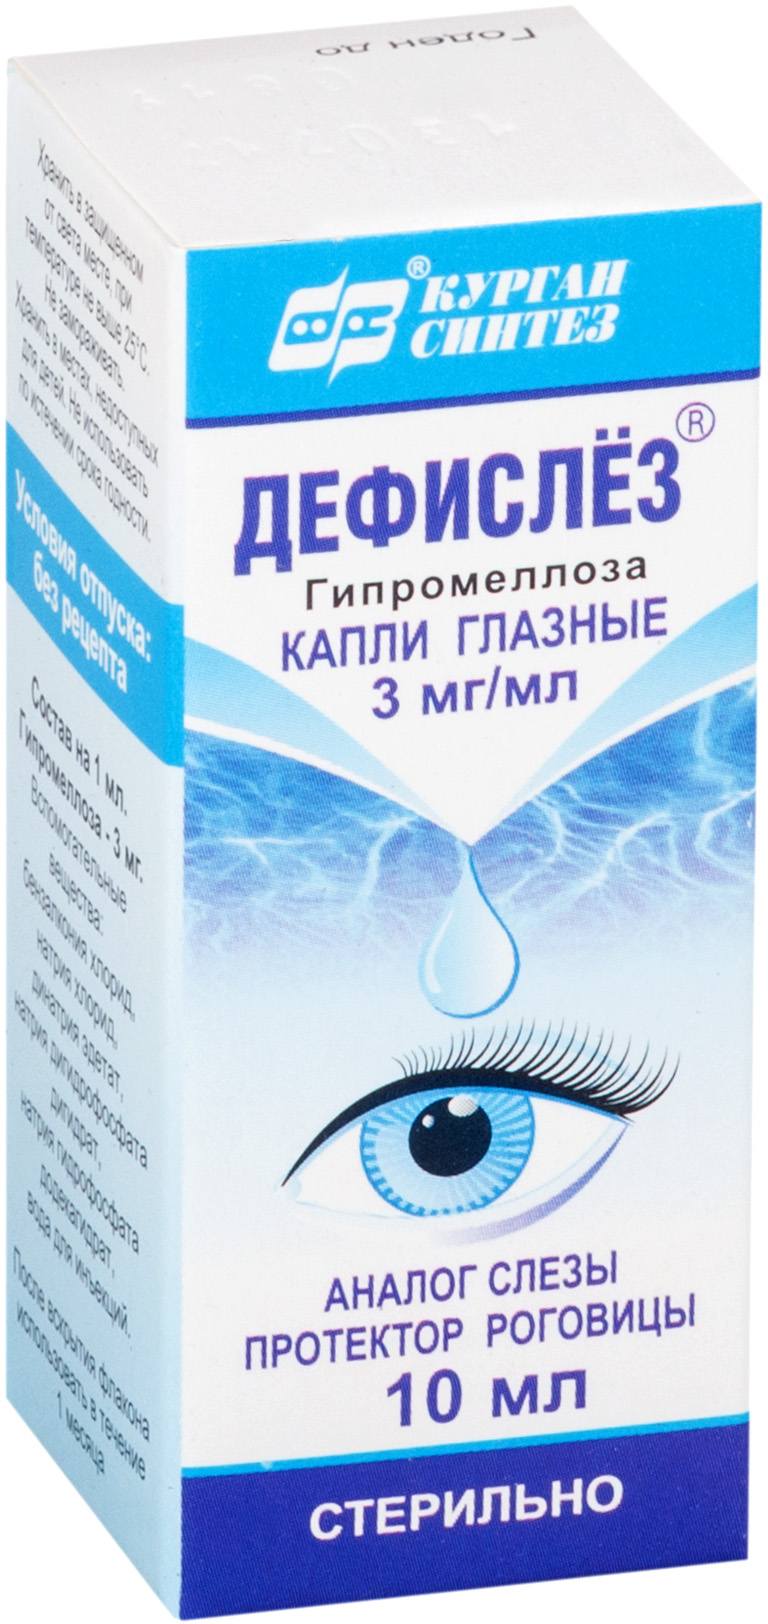 Дефислез, капли глазные 3 мг/мл, 10 мл